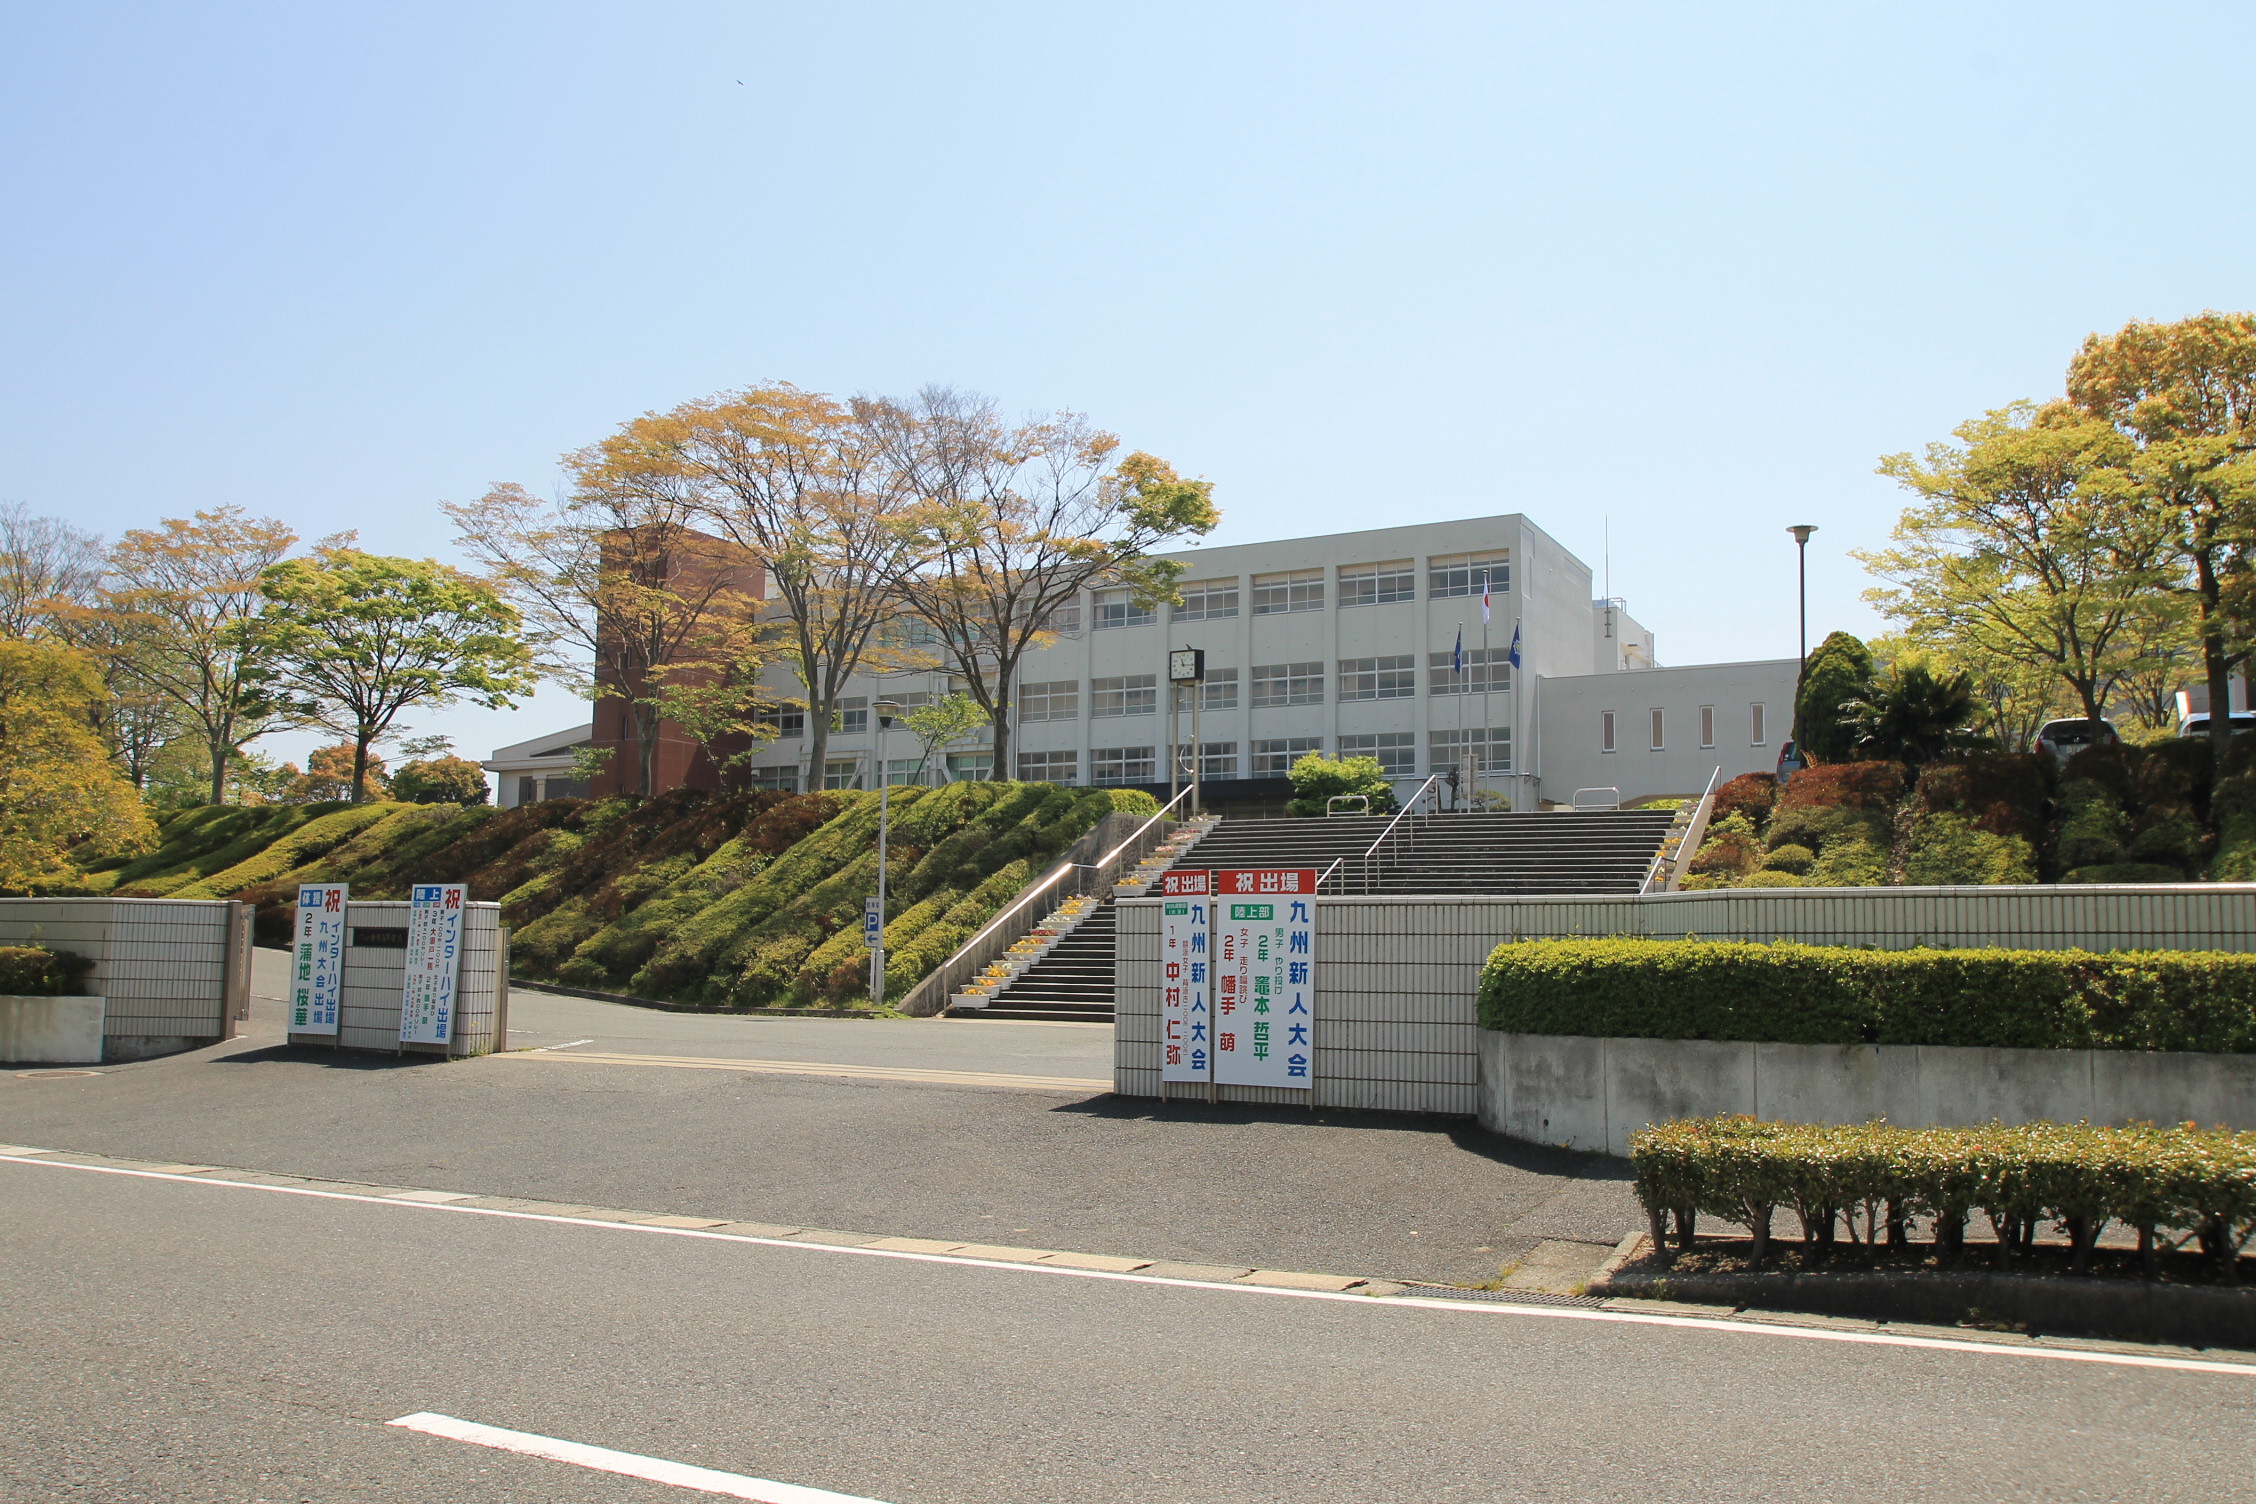 high school ・ College. Fukuoka Prefectural Kokurahigashi High School (High School ・ NCT) to 973m